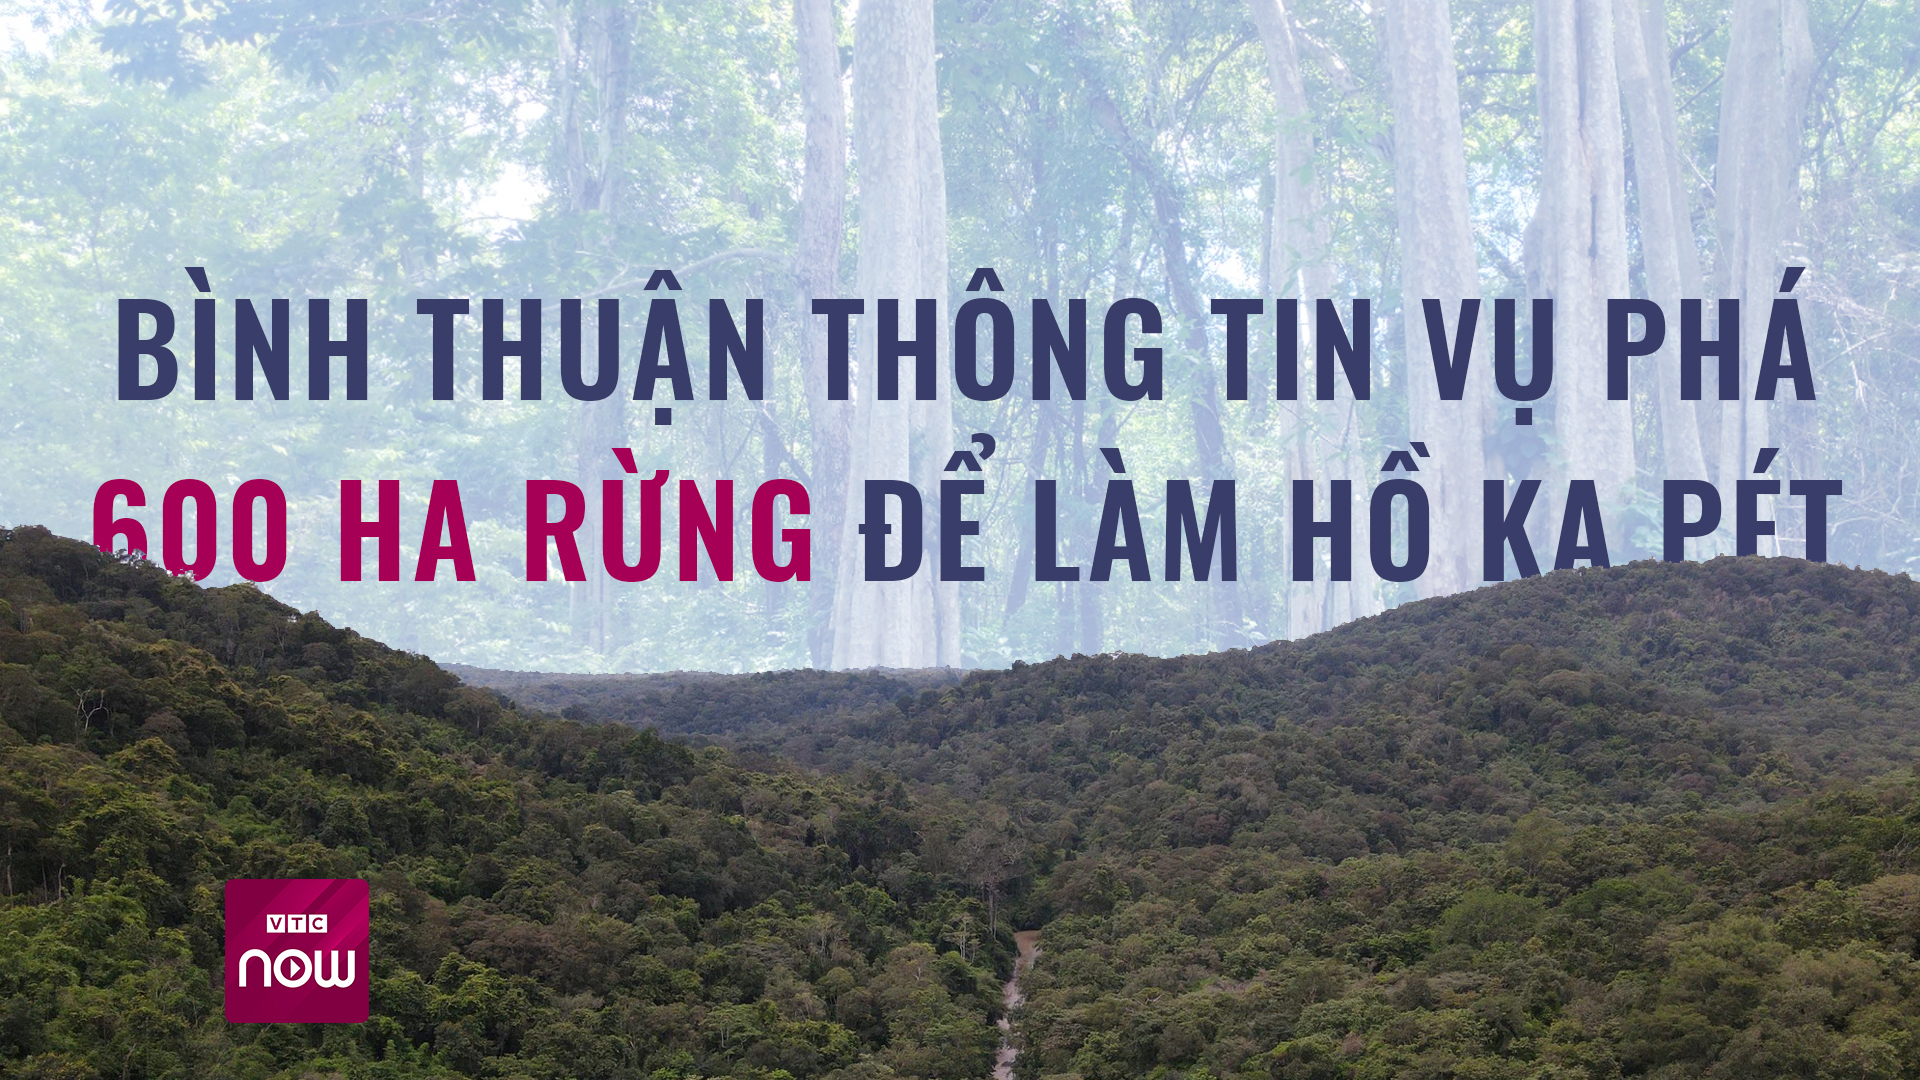 Bình Thuận thông tin vụ phá hơn 600 ha rừng làm hồ chứa nước Ka Pét